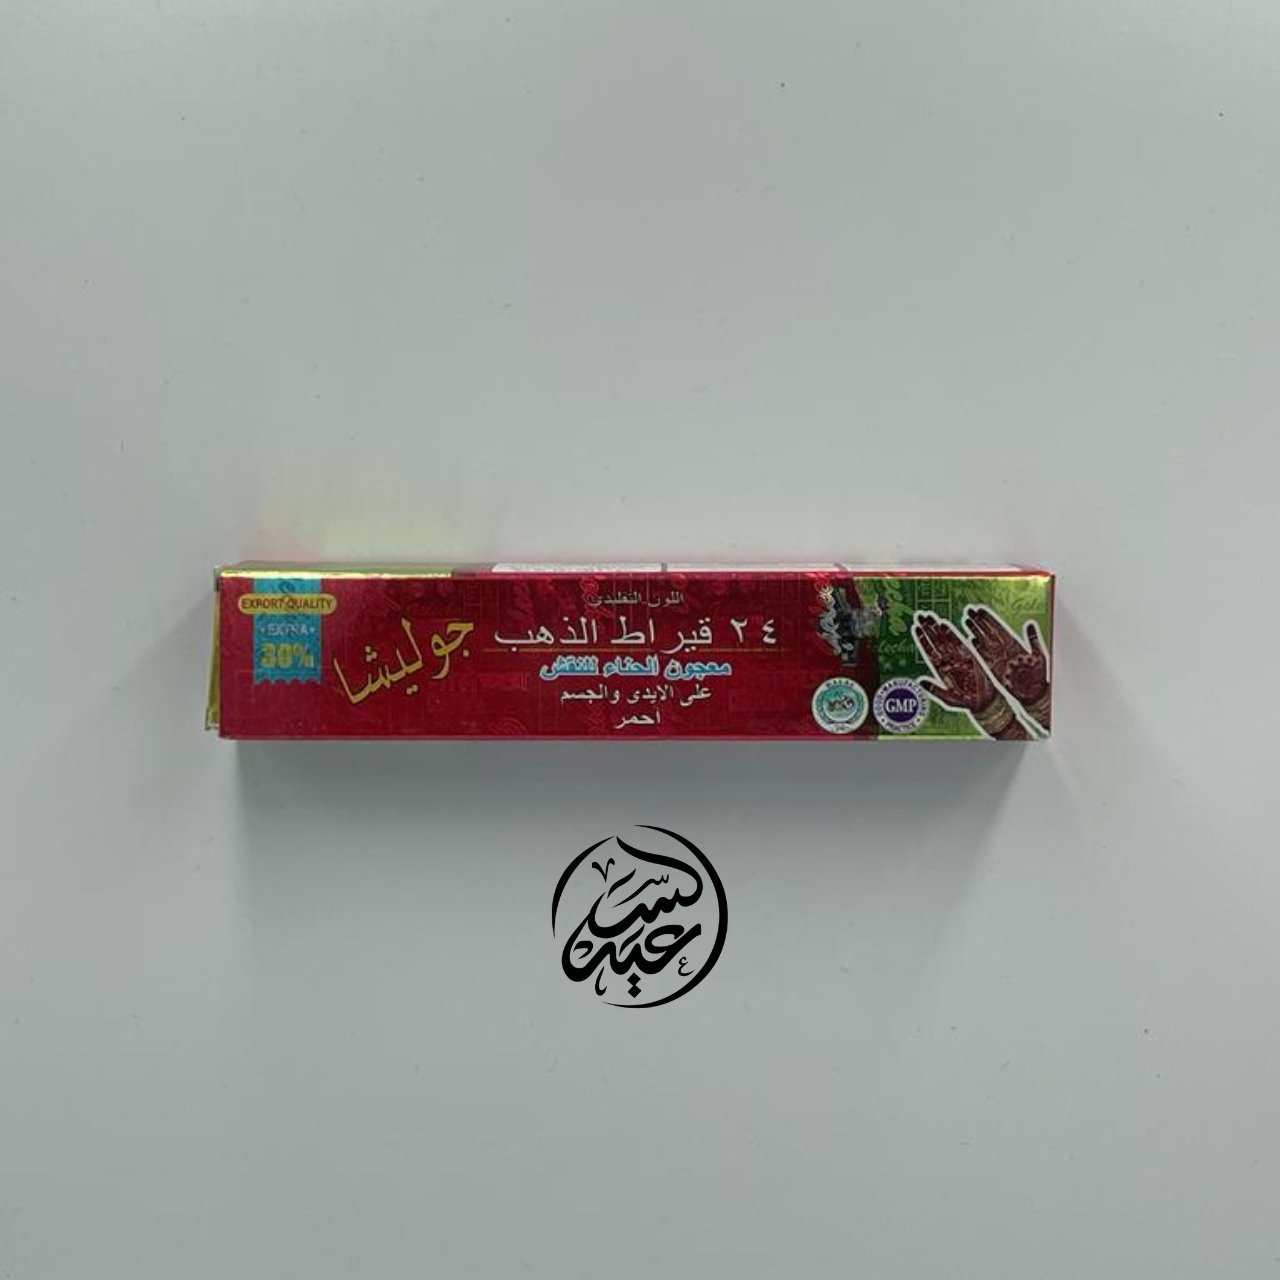 Henna paste for drawing معجون حنا للرسم - بهارات و عطارة السعيد